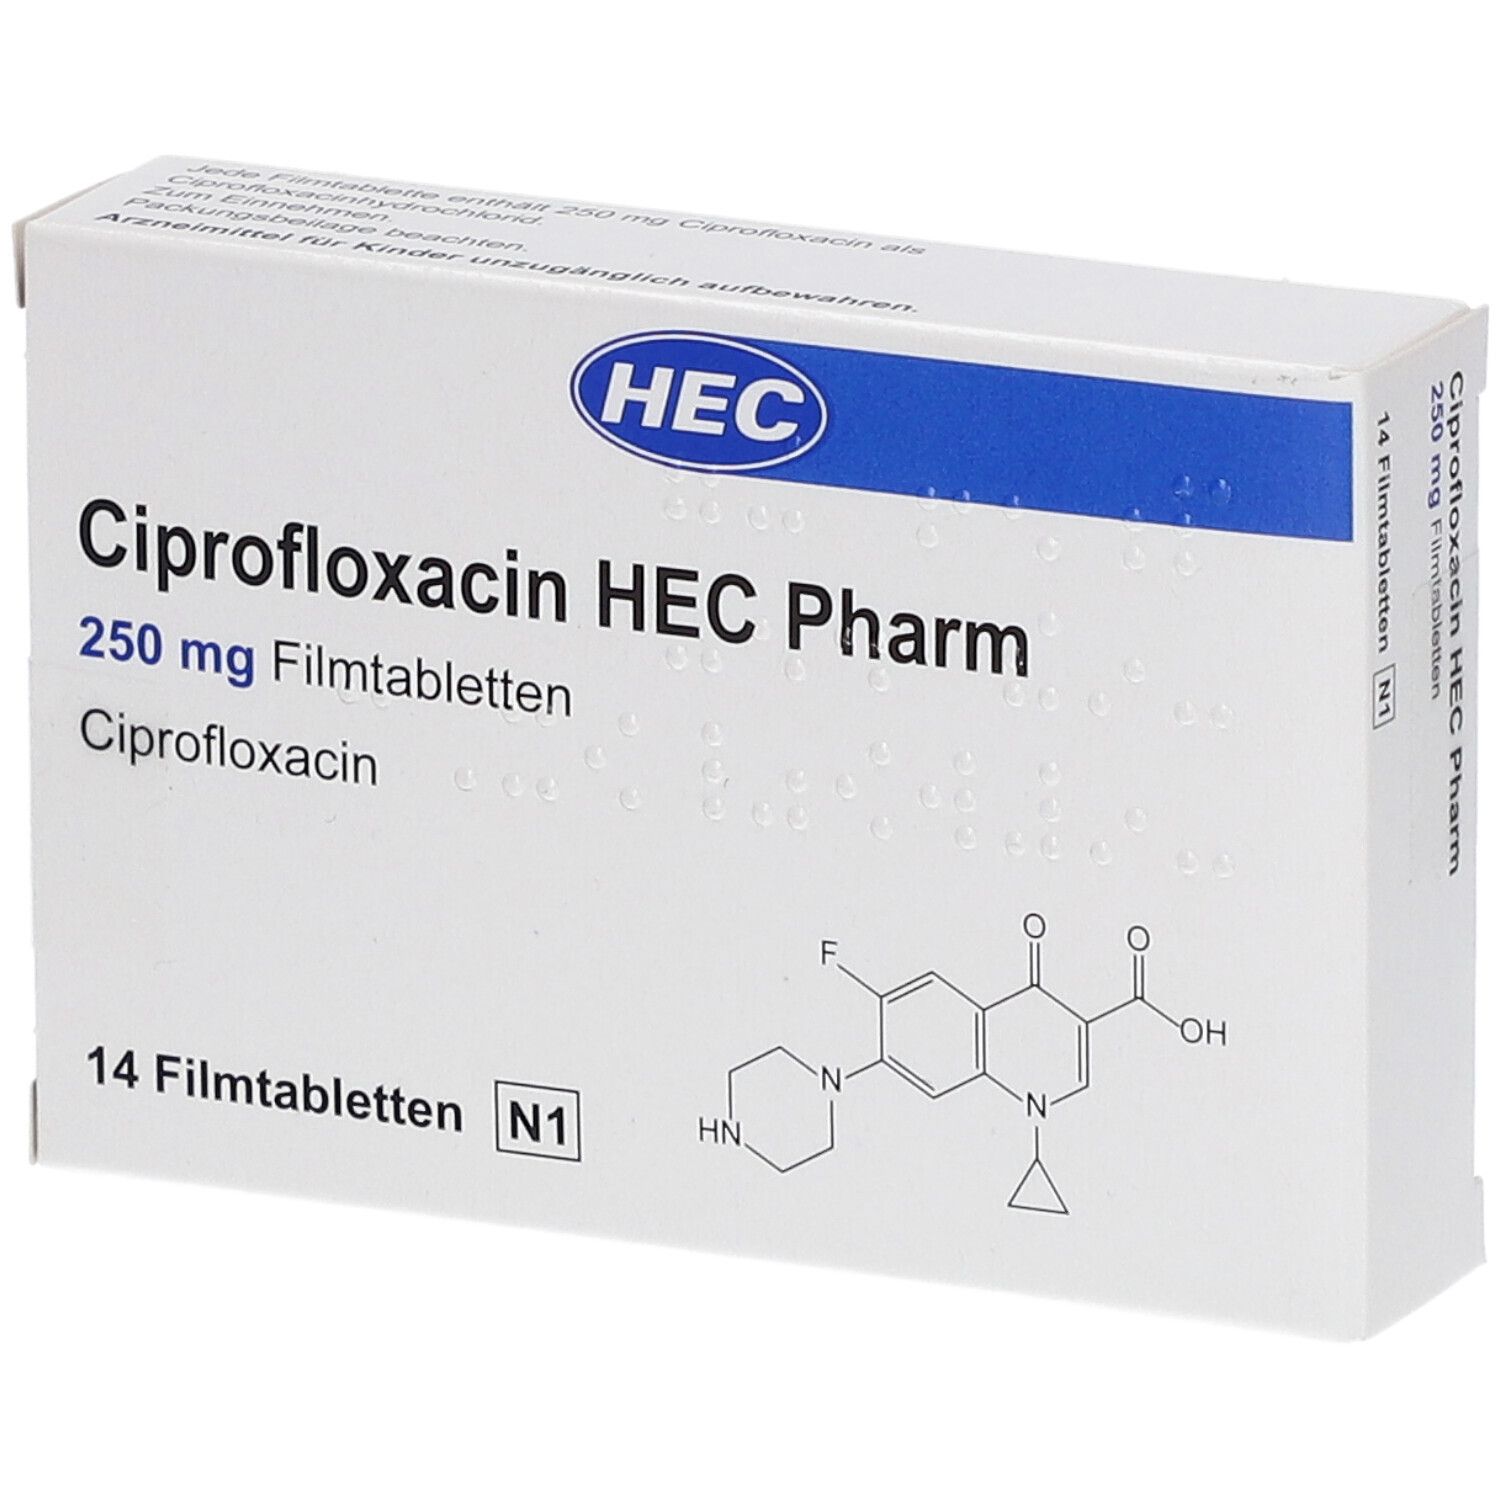 Ciprofloxacin HEC Pharm 250 mg